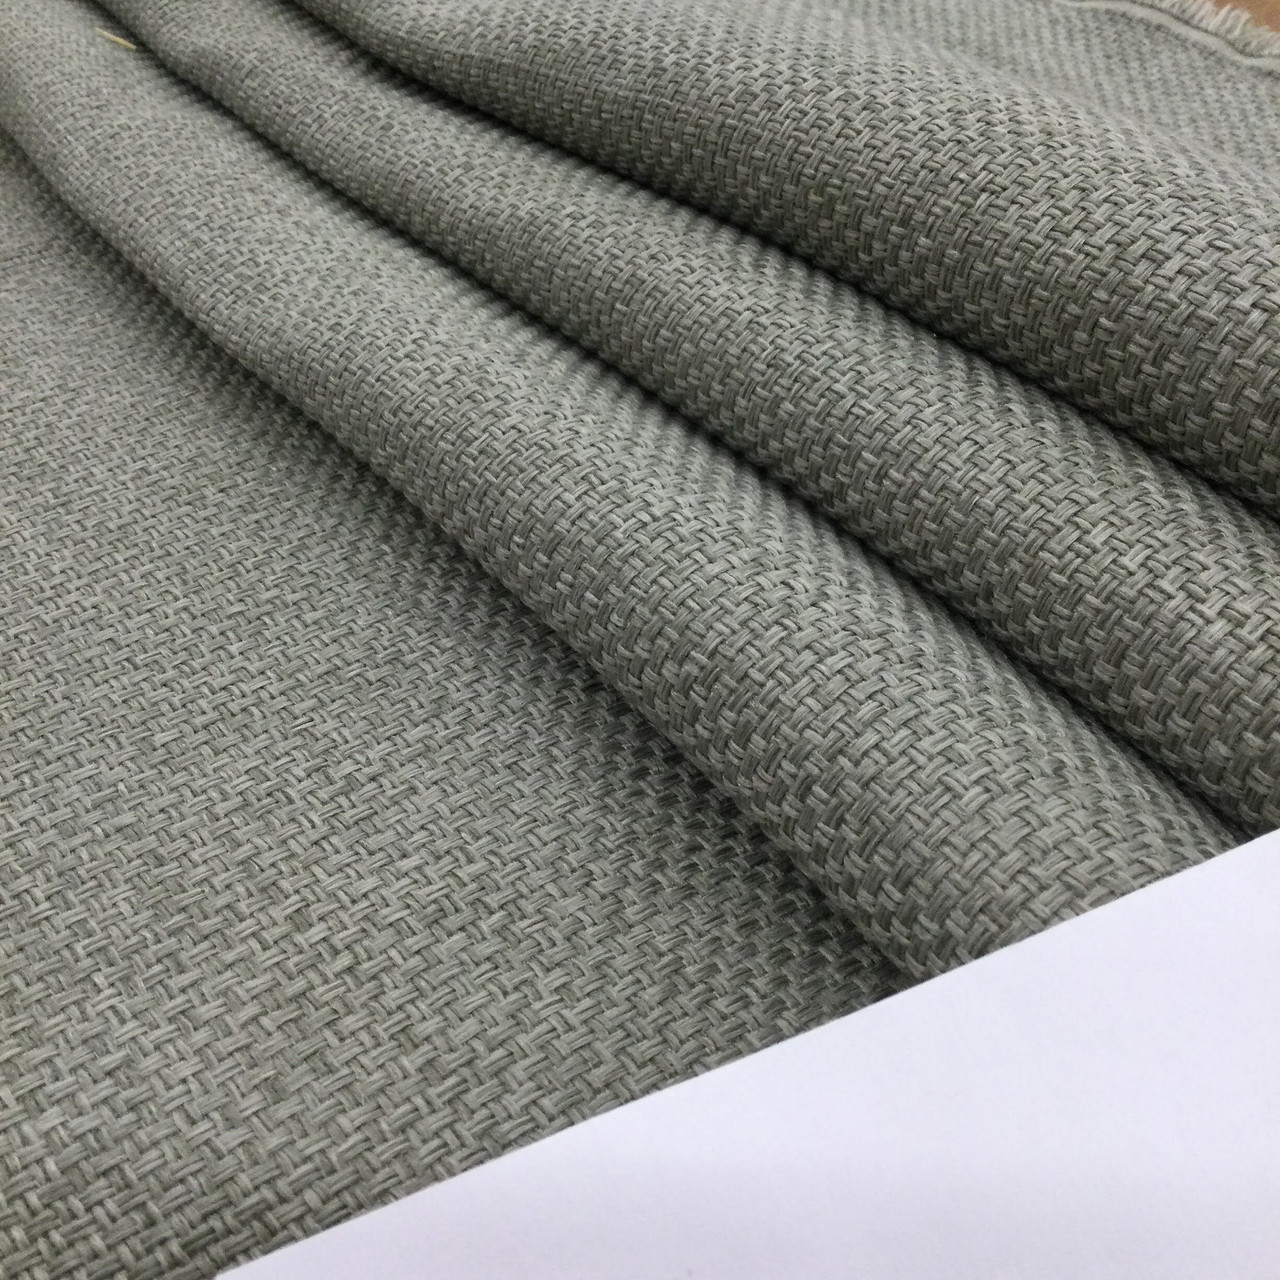 Wholesale Nylon Craft Netting - Grey - 40 yards